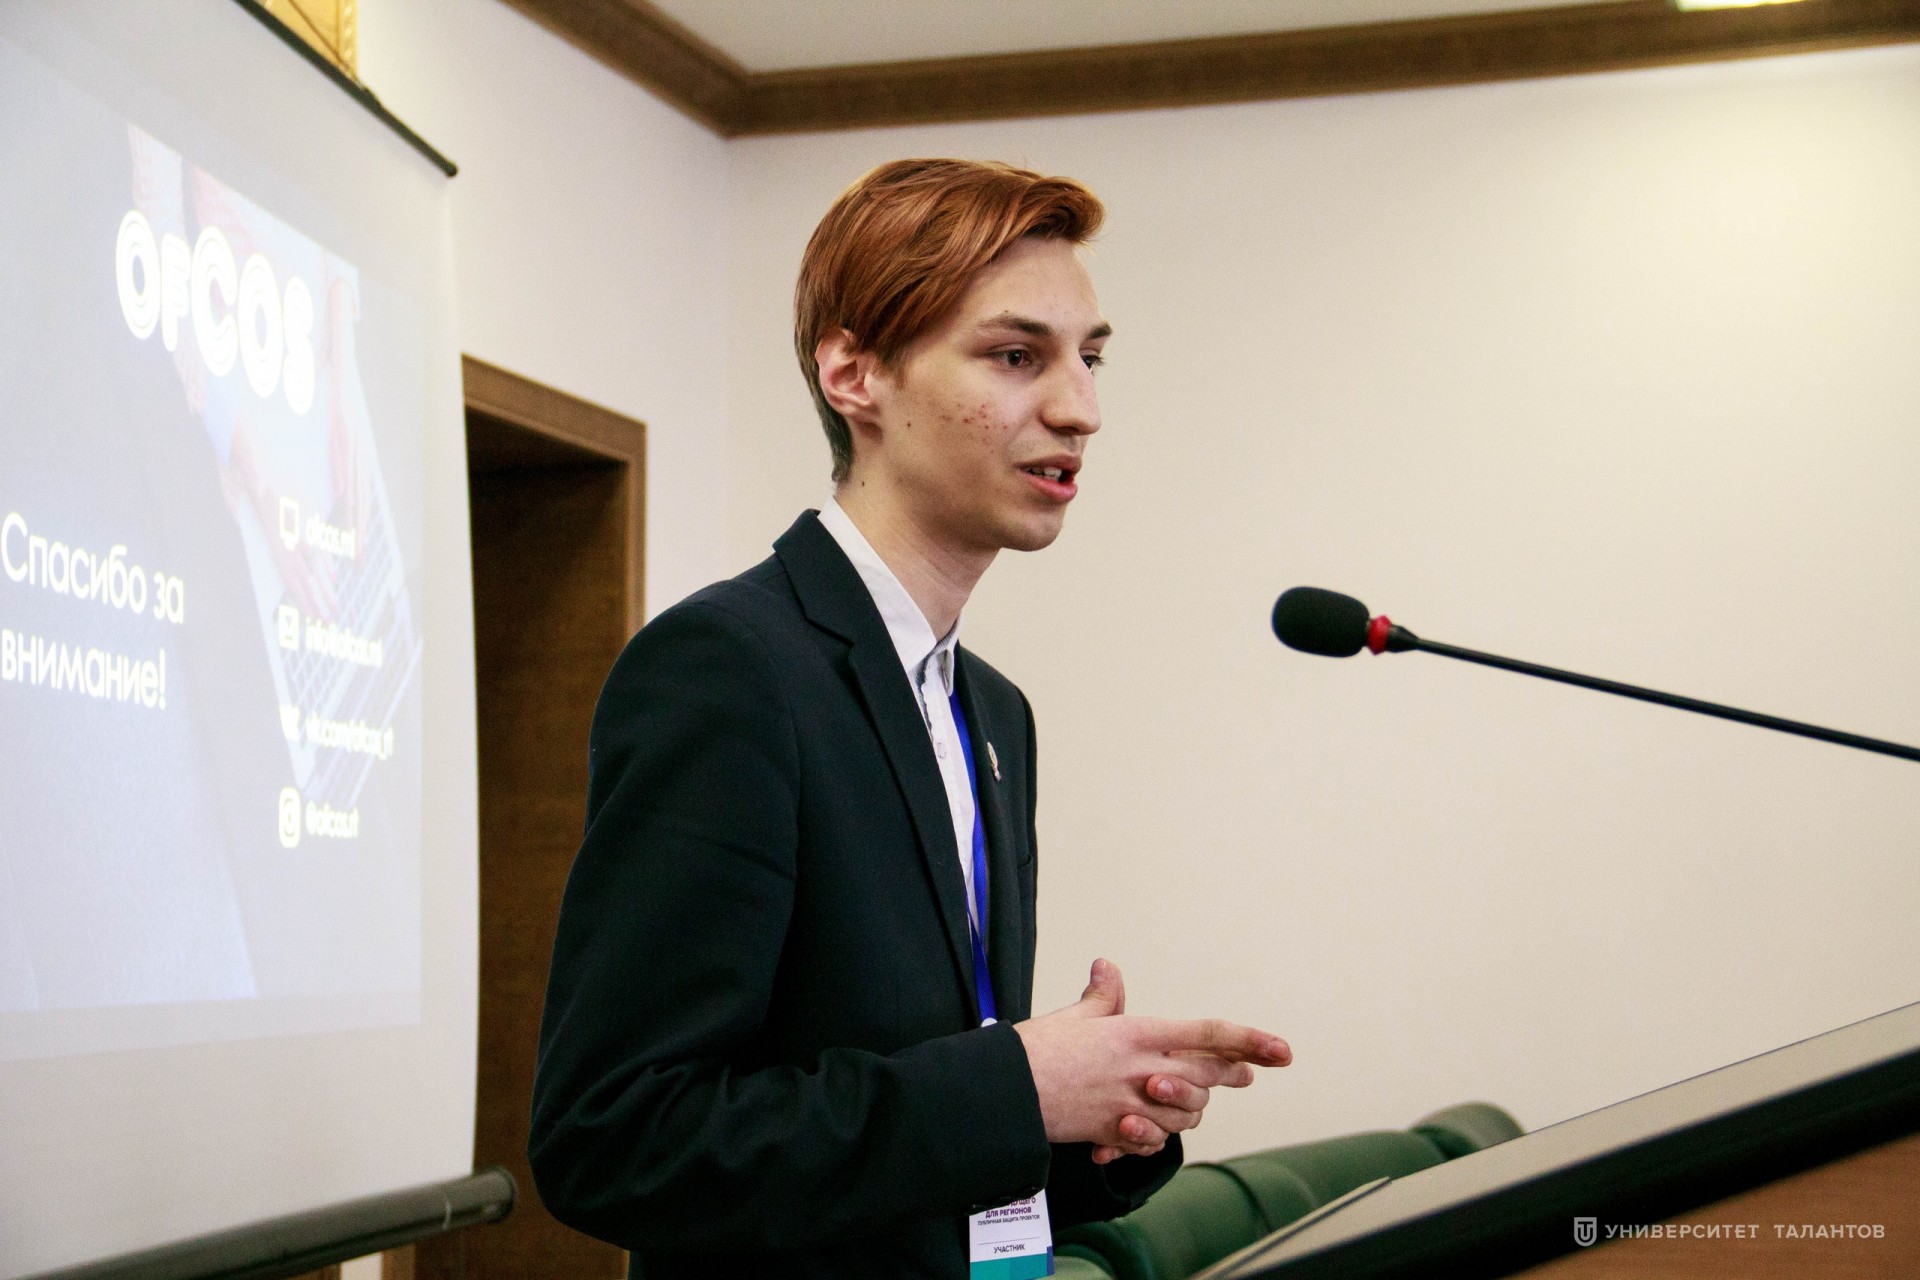  Никита Павлов: «Участник Студенческого совета – это ответственный и инициативный человек»